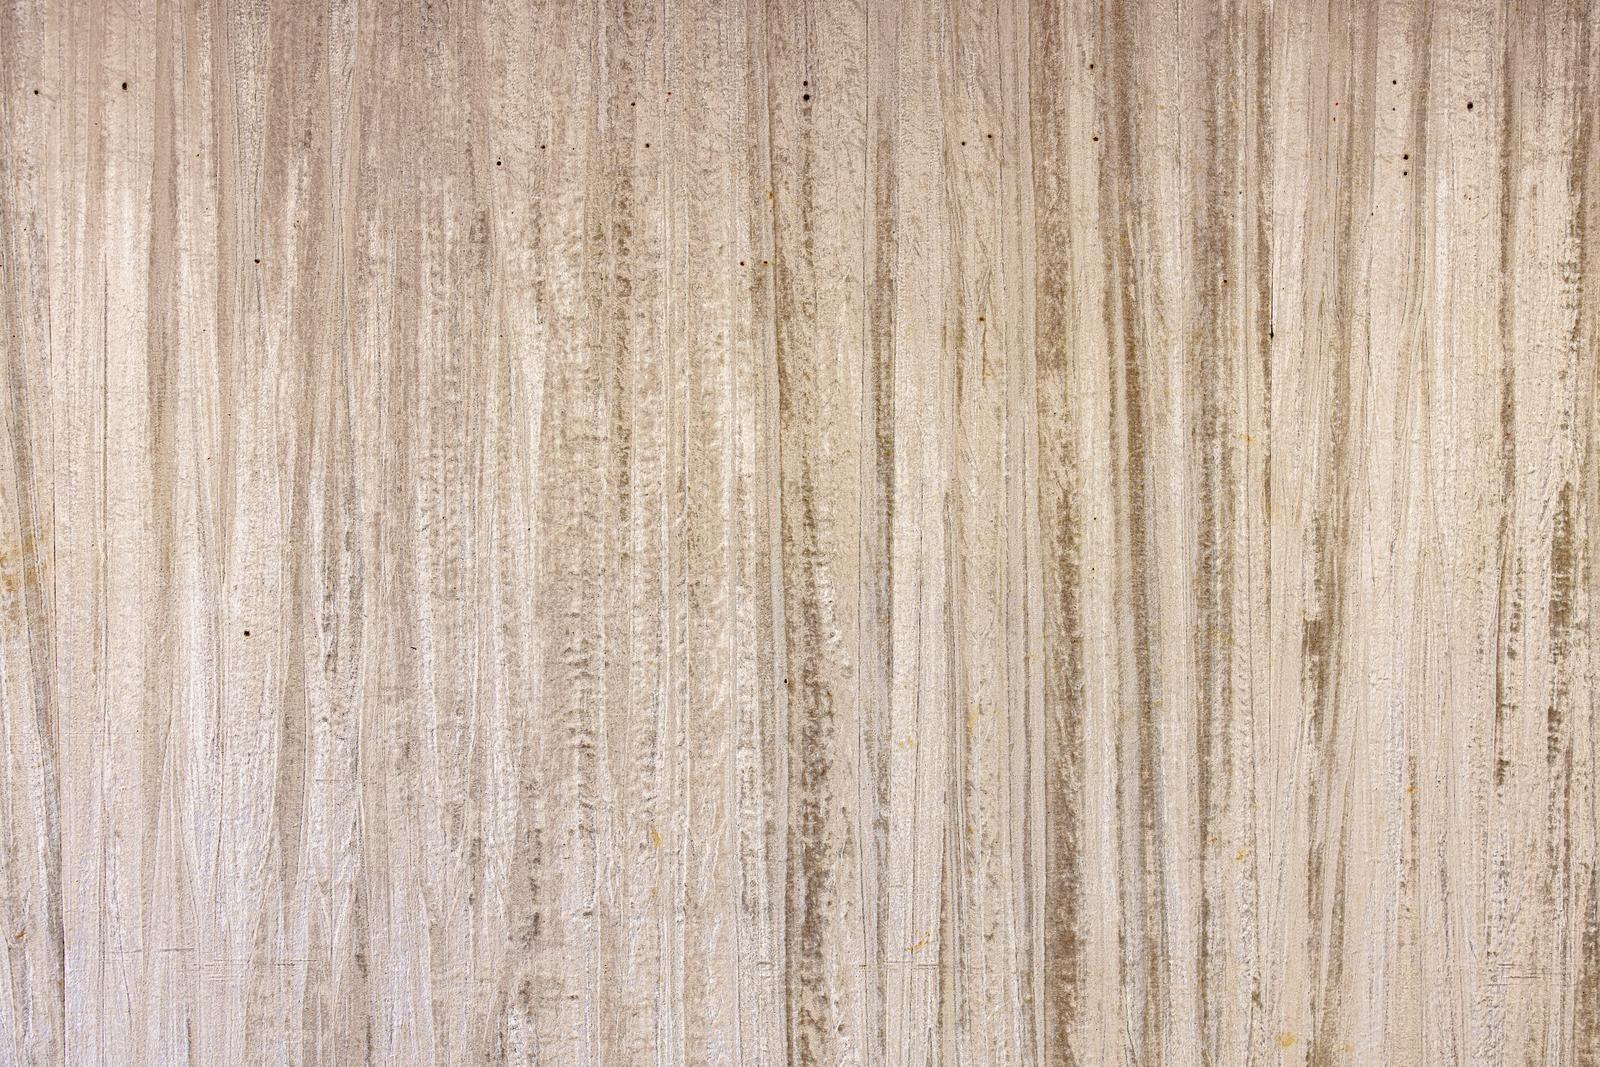 「画鋲痕が残る木目調の壁」の写真